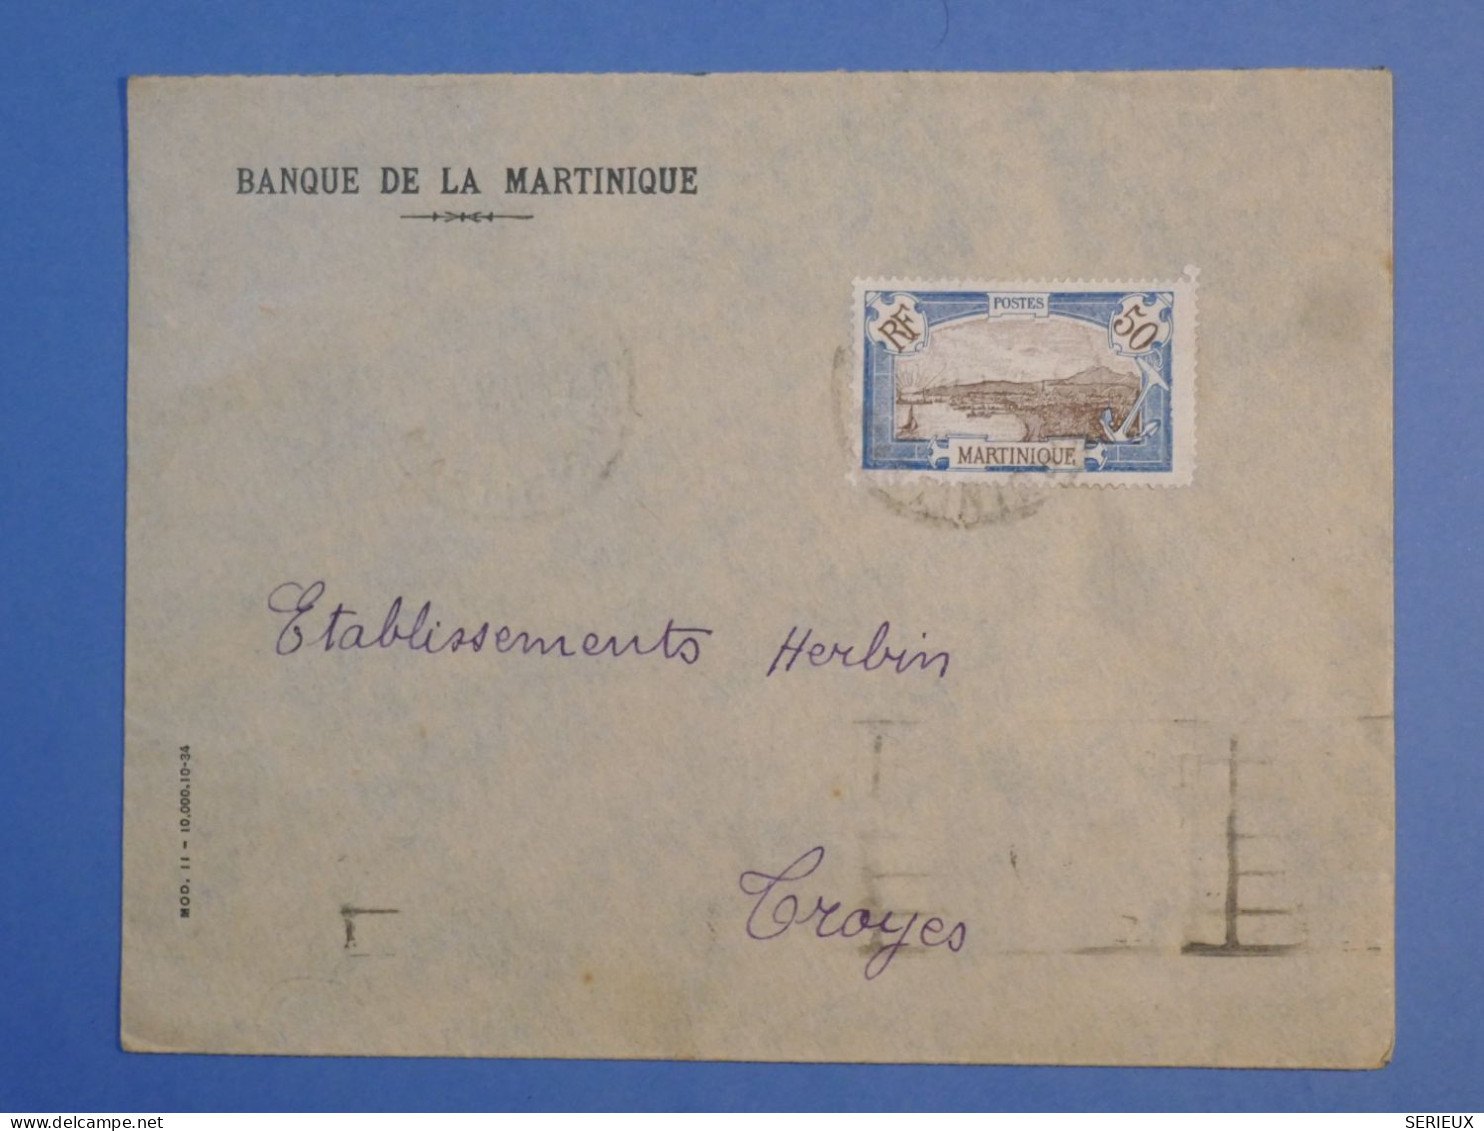 DK 12 MARTINIQUE   BELLE LETTRE    BANQUE 1935 A TROYES  FRANCE ++AFF. INTERESSANT++++ + - Cartas & Documentos